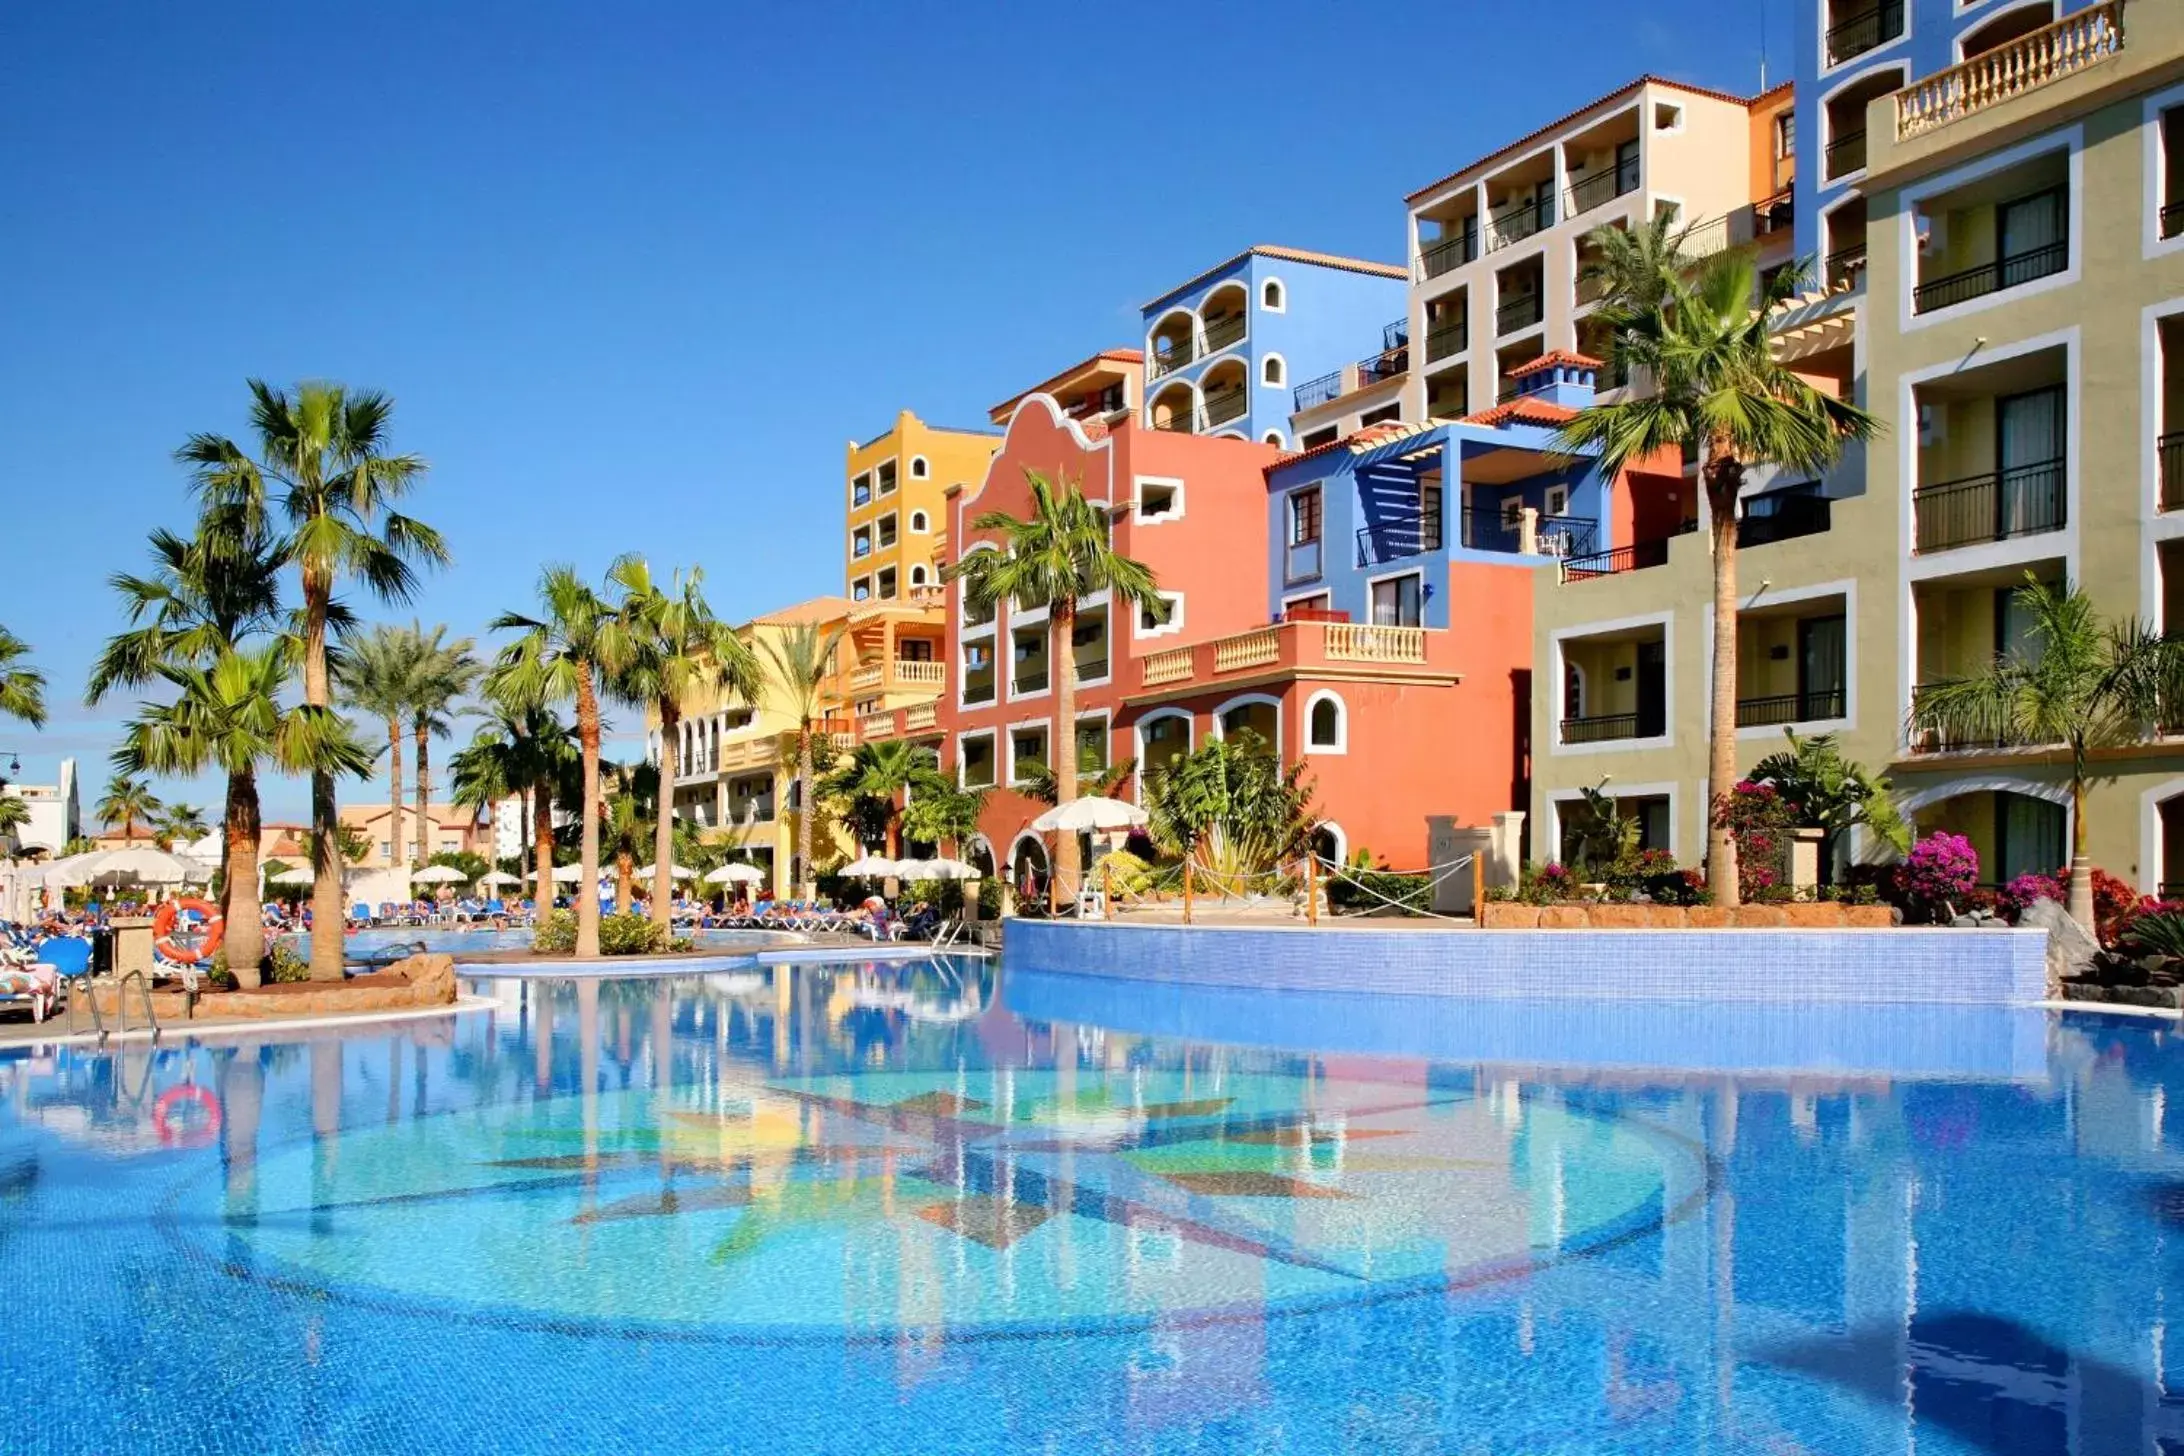 Property building, Swimming Pool in Bahia Principe Sunlight Tenerife